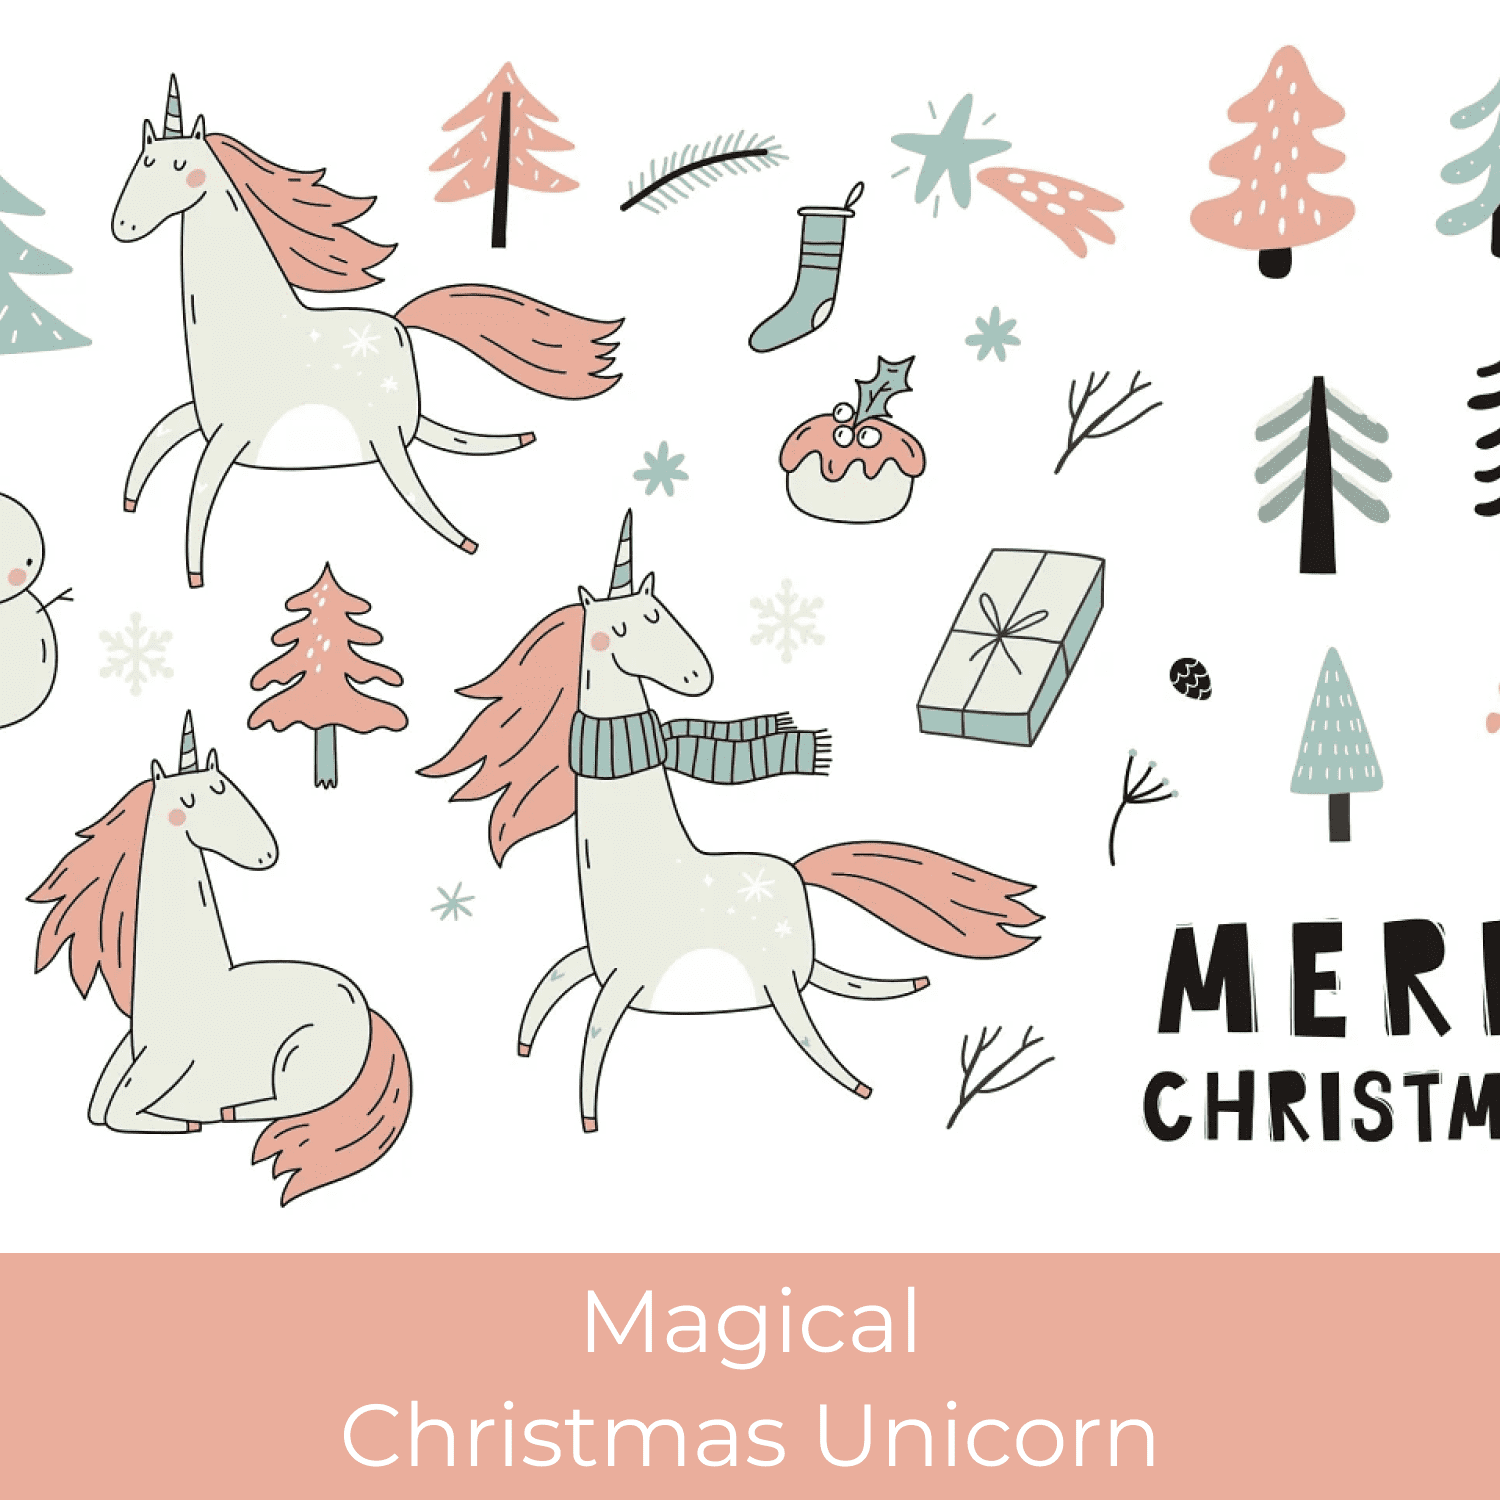 Magical Christmas Unicorn.